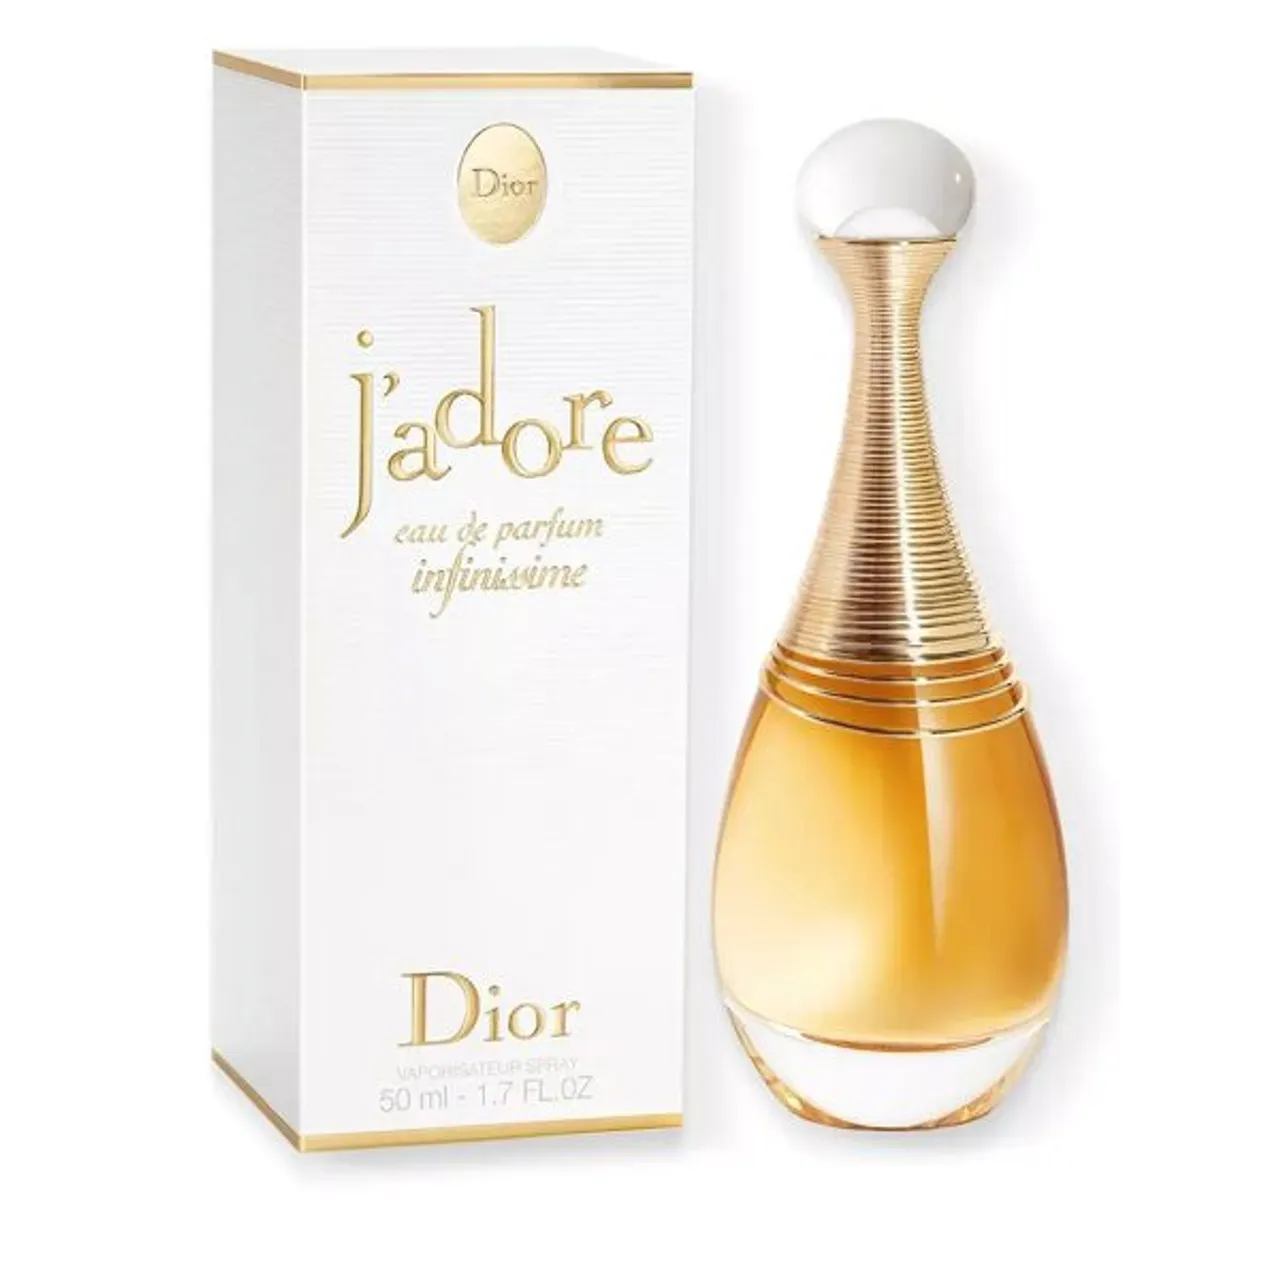 Christian Dior J'adore Eau de Parfum Infinissime - Female - Size: 50ml